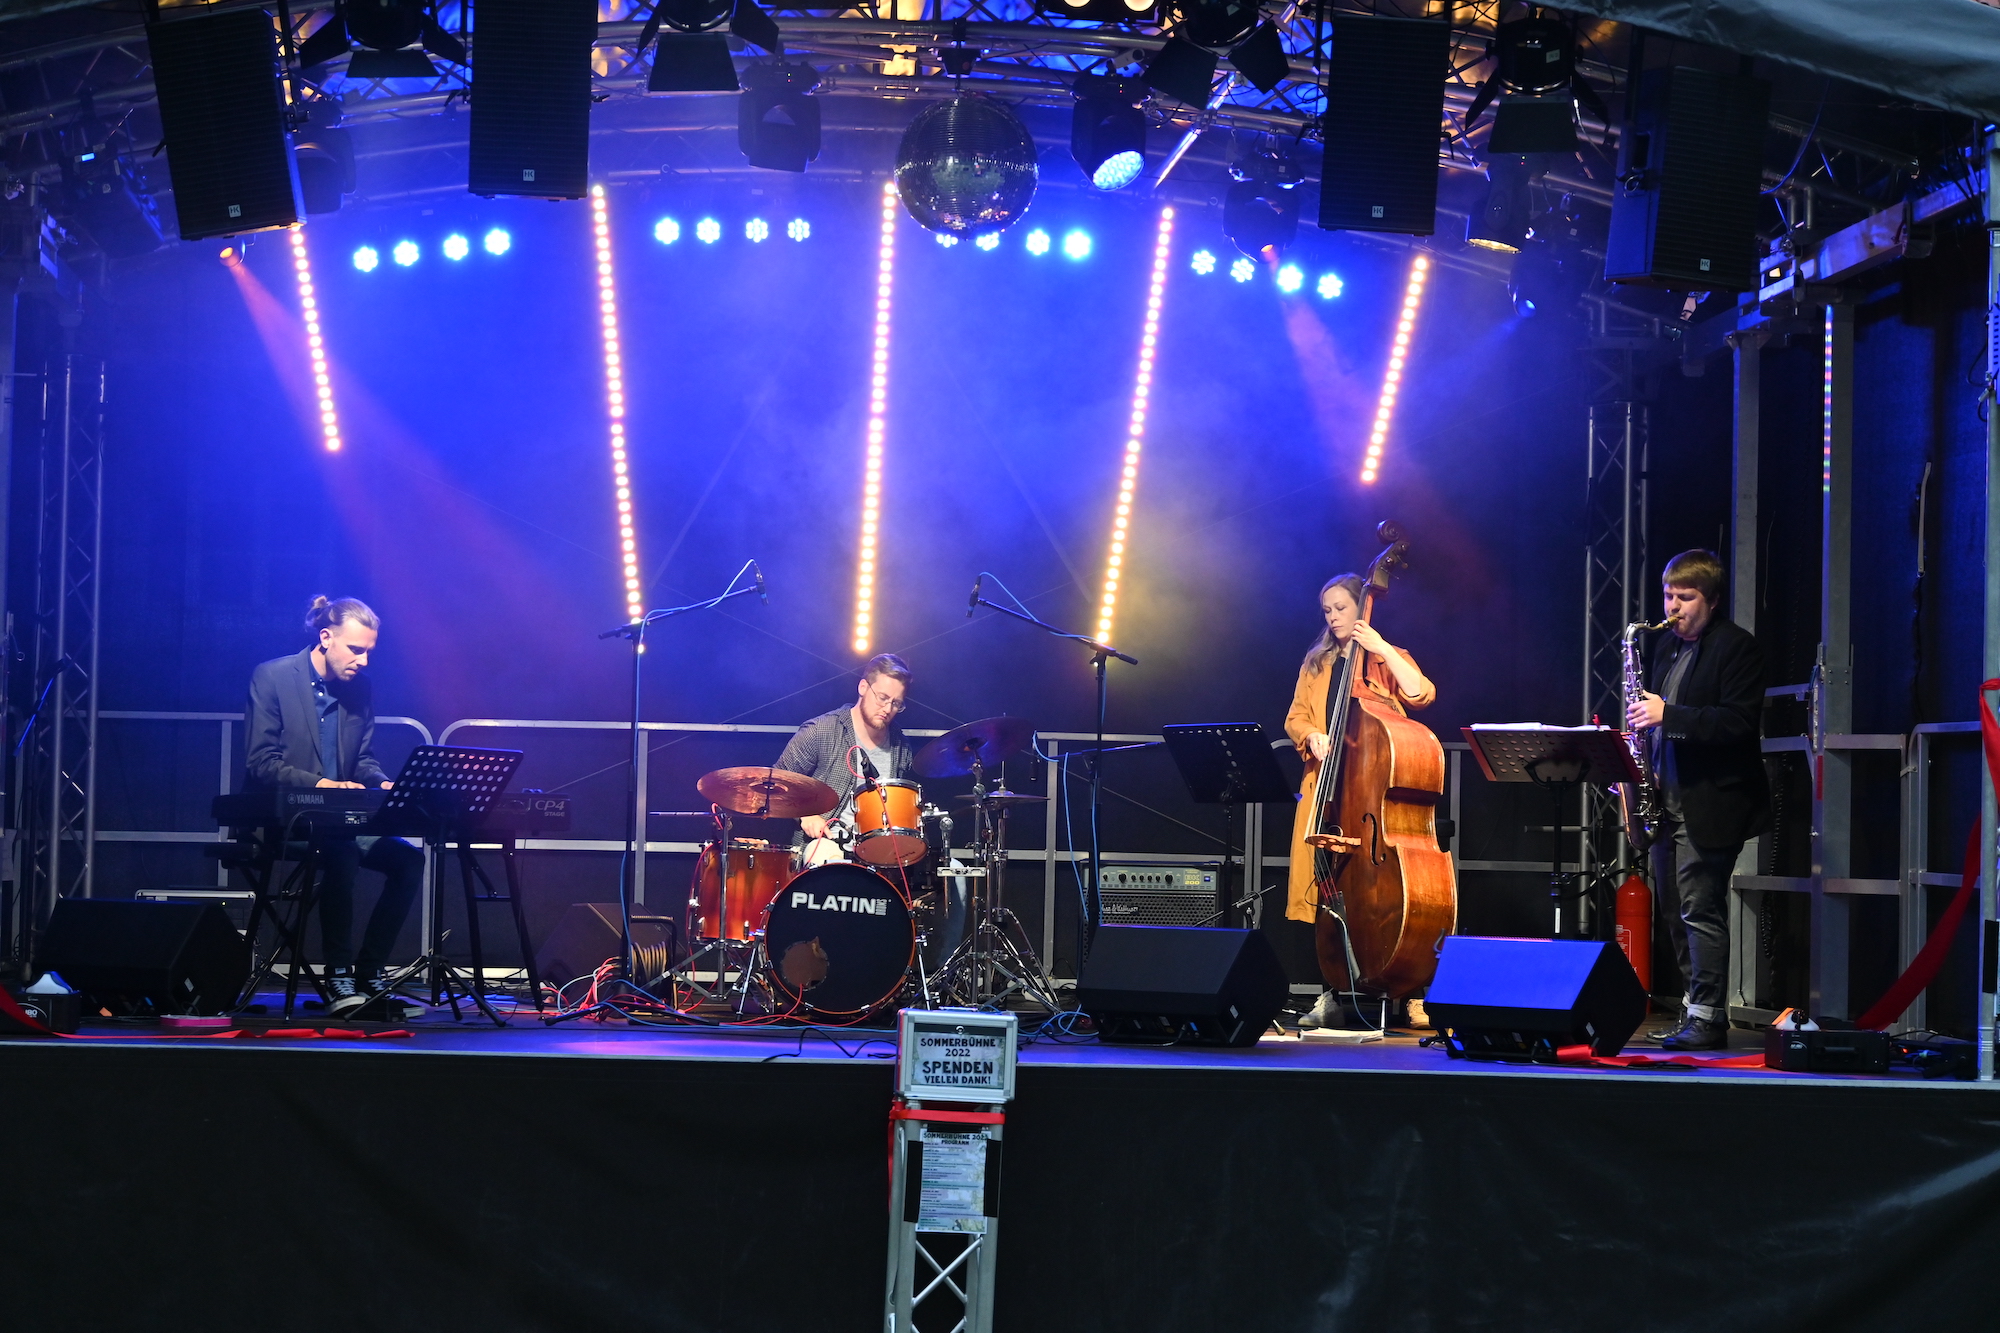 Vier Personen stehen auf einer beleuchteten Bühne und spielen jeweils auf einem Musikinstrument.